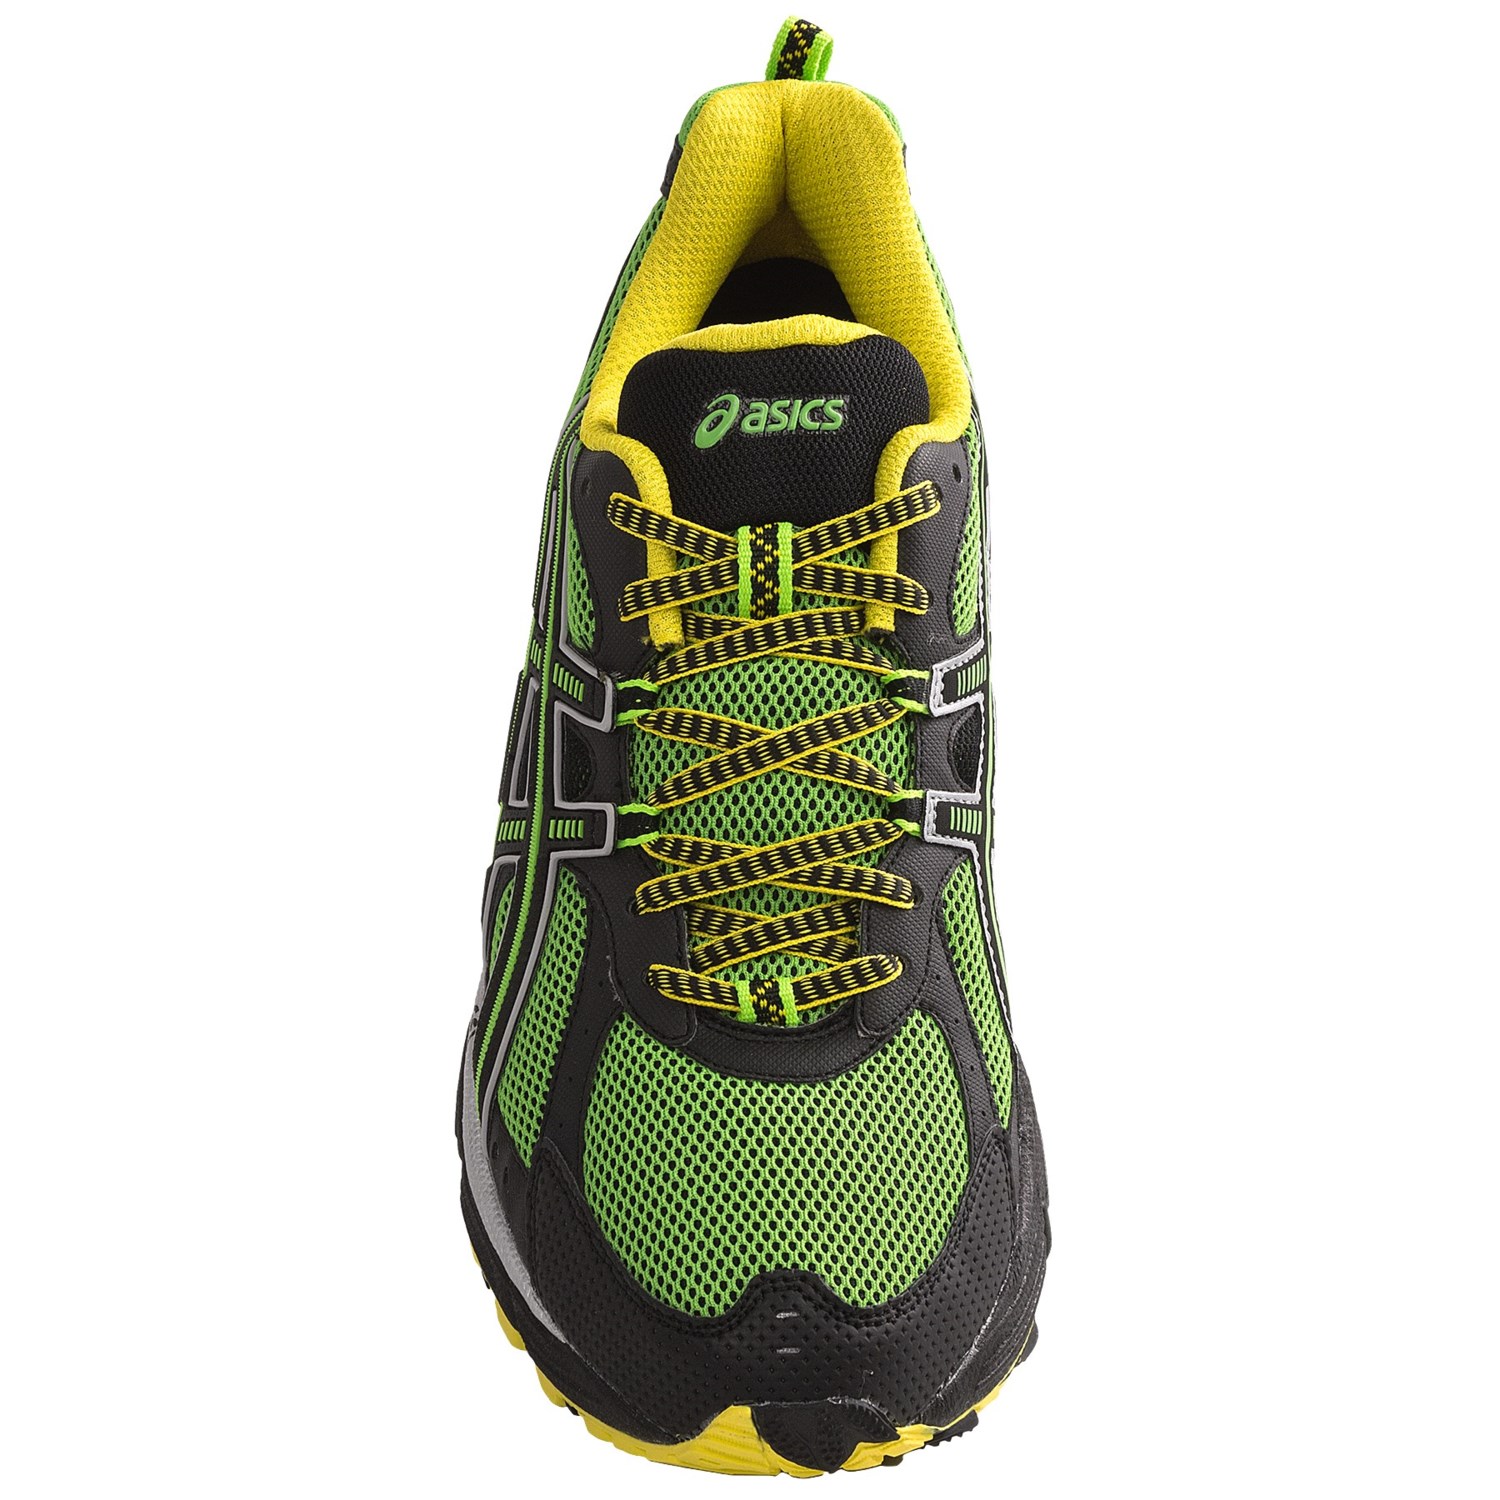 Asics GEL-Kahana 6 Trail Running Shoes (For Men) 6250G - Save 25%